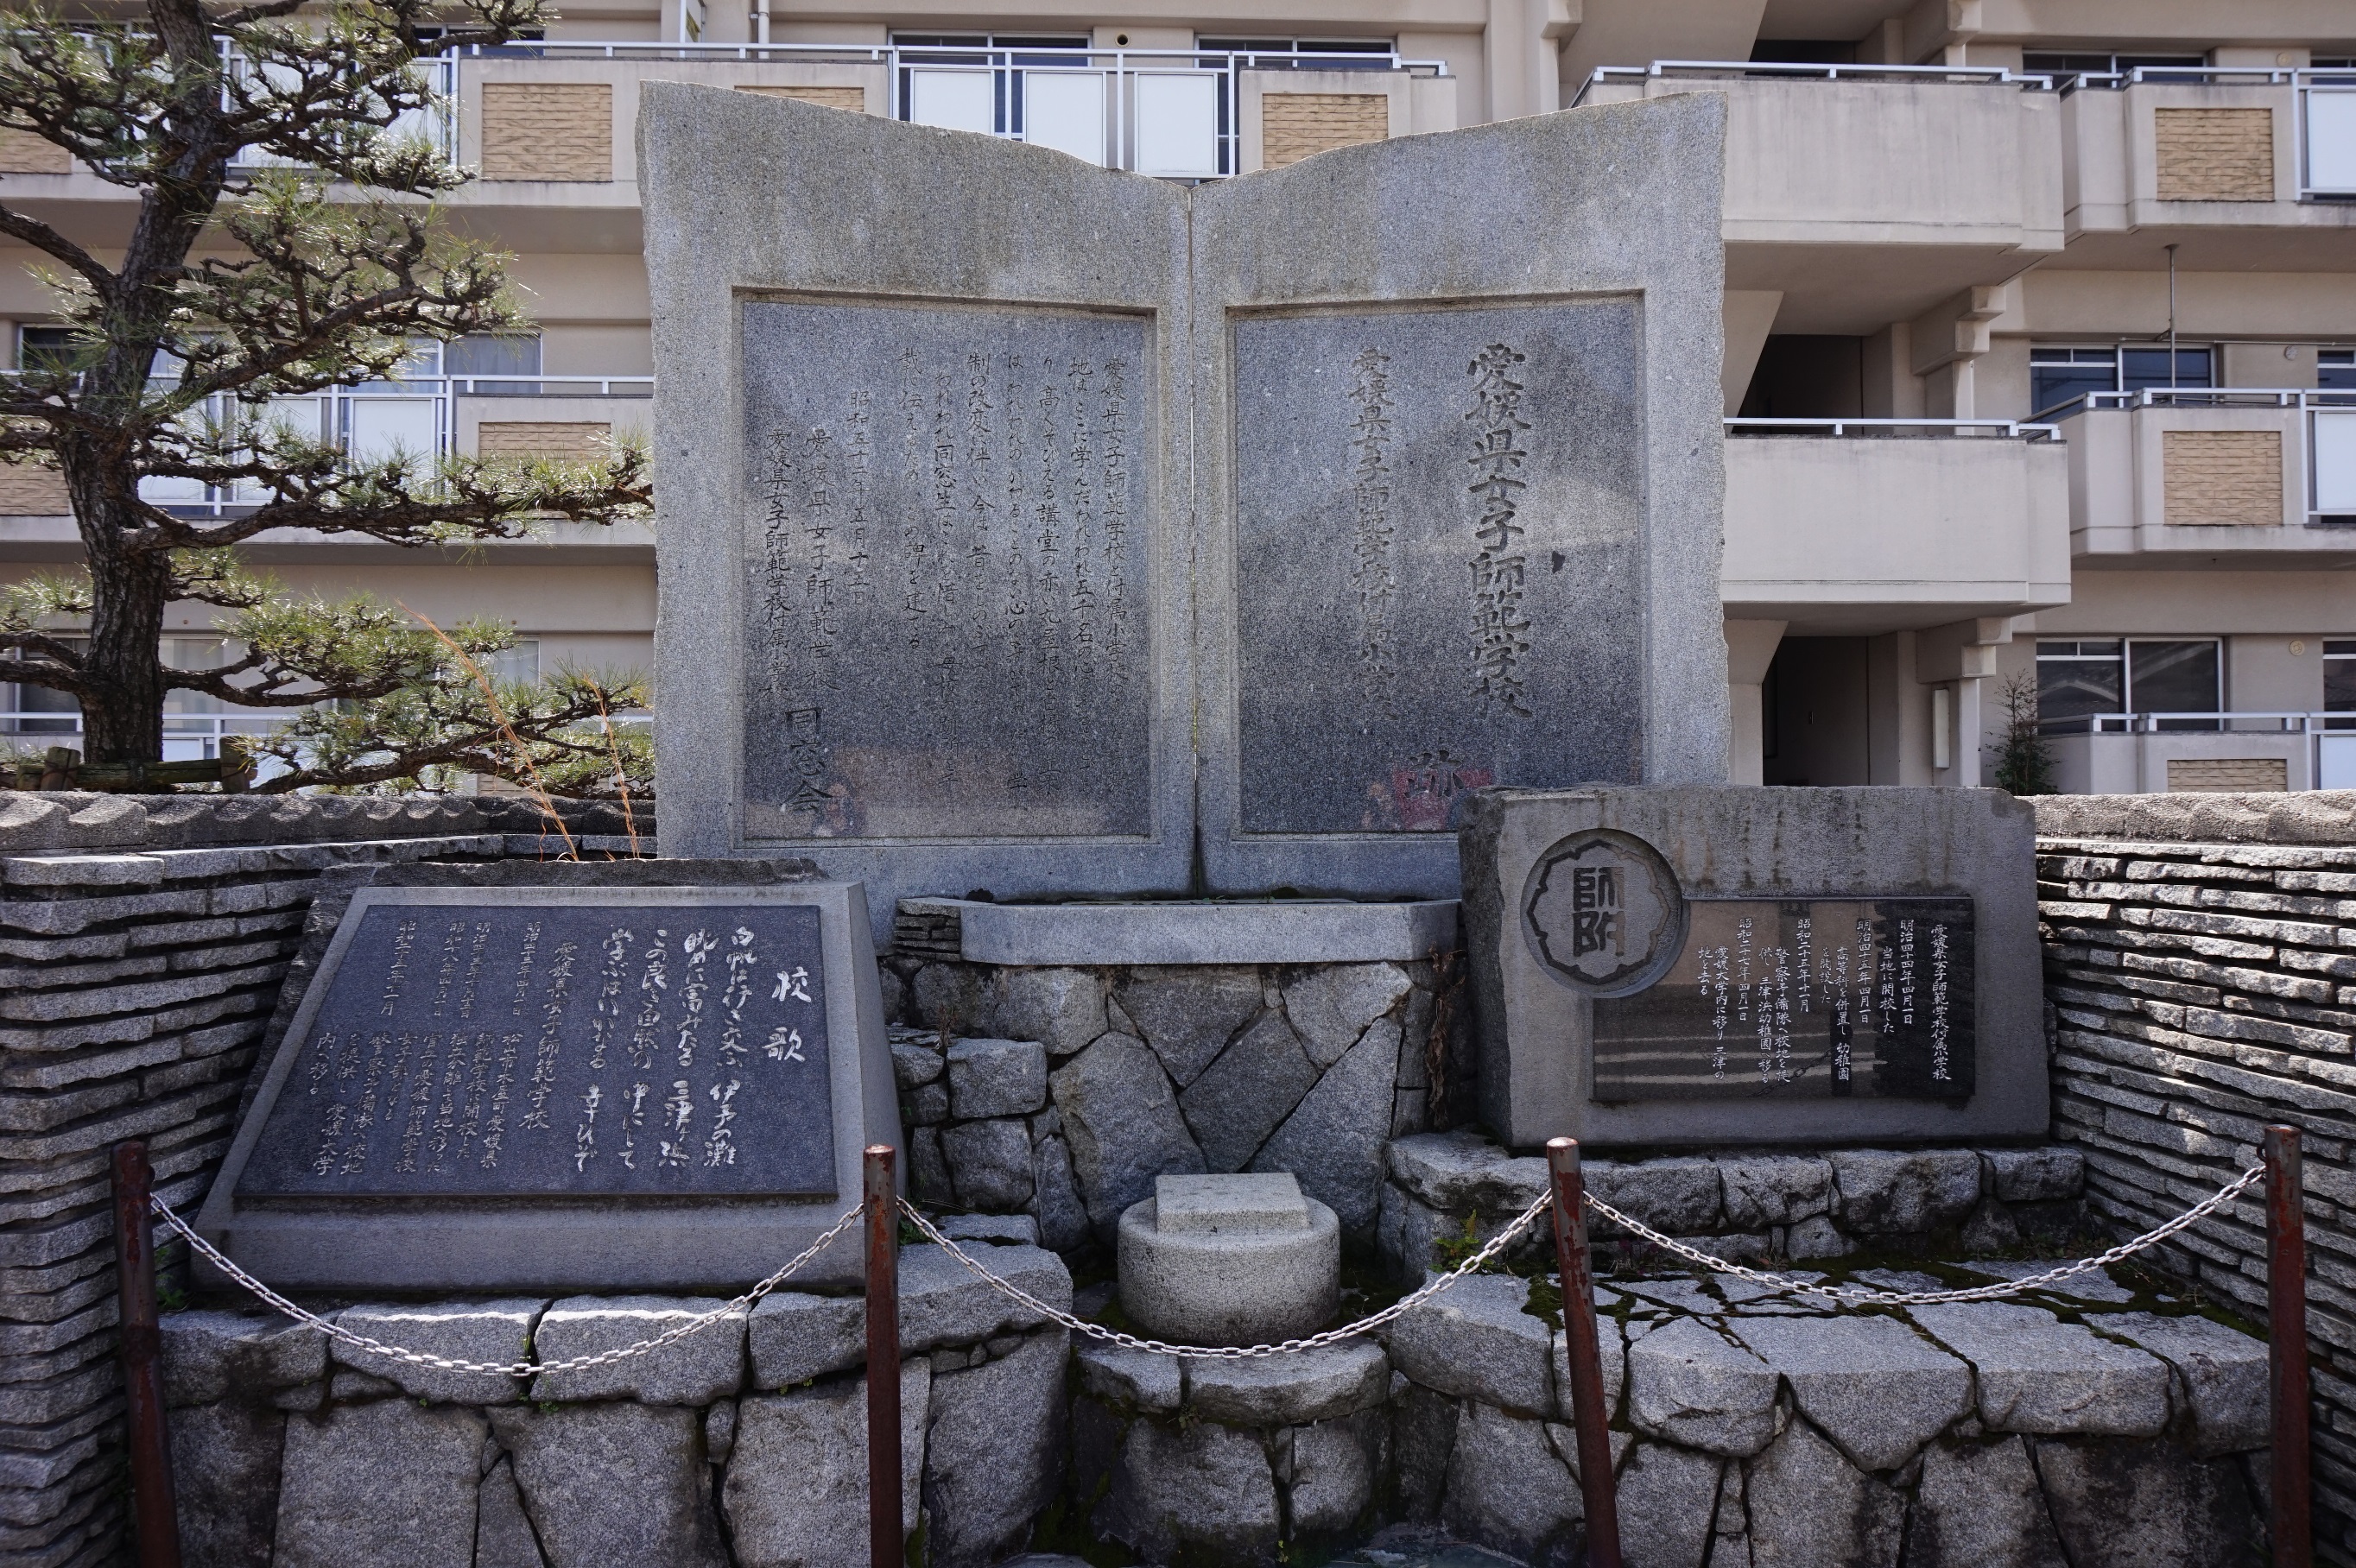 愛媛県女子師範学校・同付属小学校跡」碑(1977(昭和52)年) | 愛媛県 